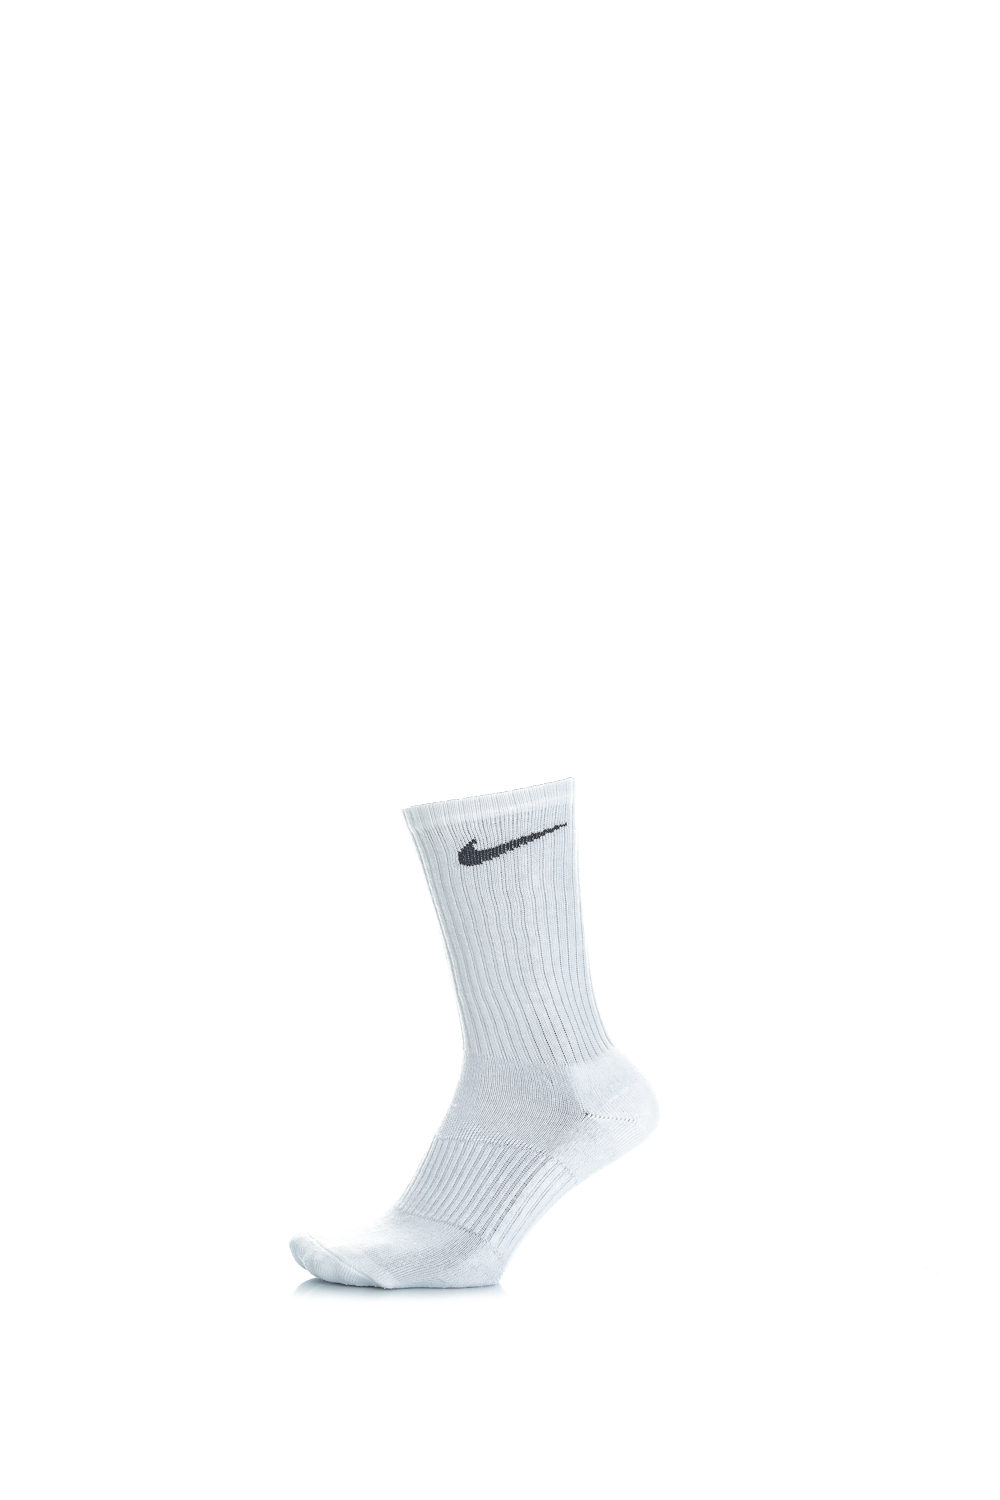 NIKE – Σετ από 3 ζευγάρια κάλτσες λευκές 1154329.1-0091